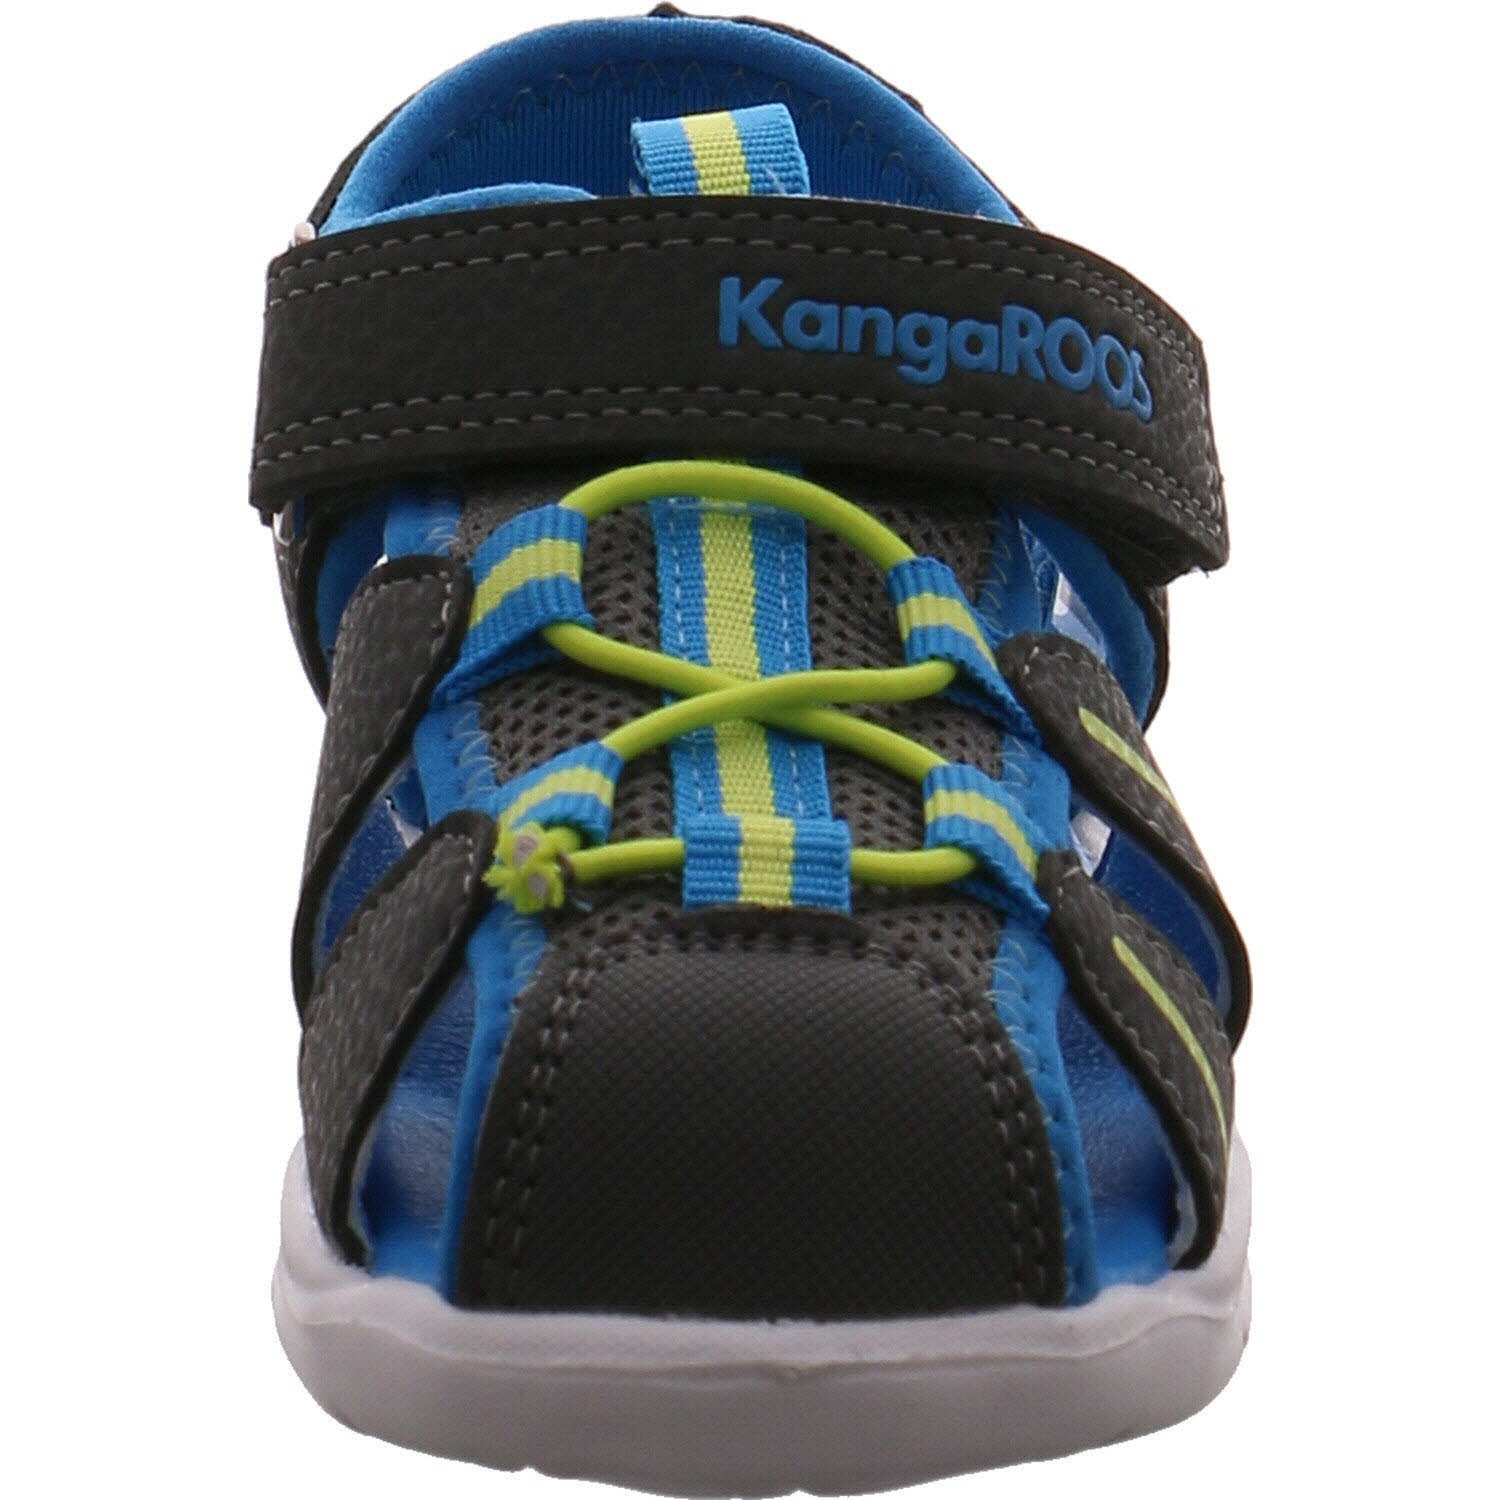 Sandale K-Grobi KangaROOS